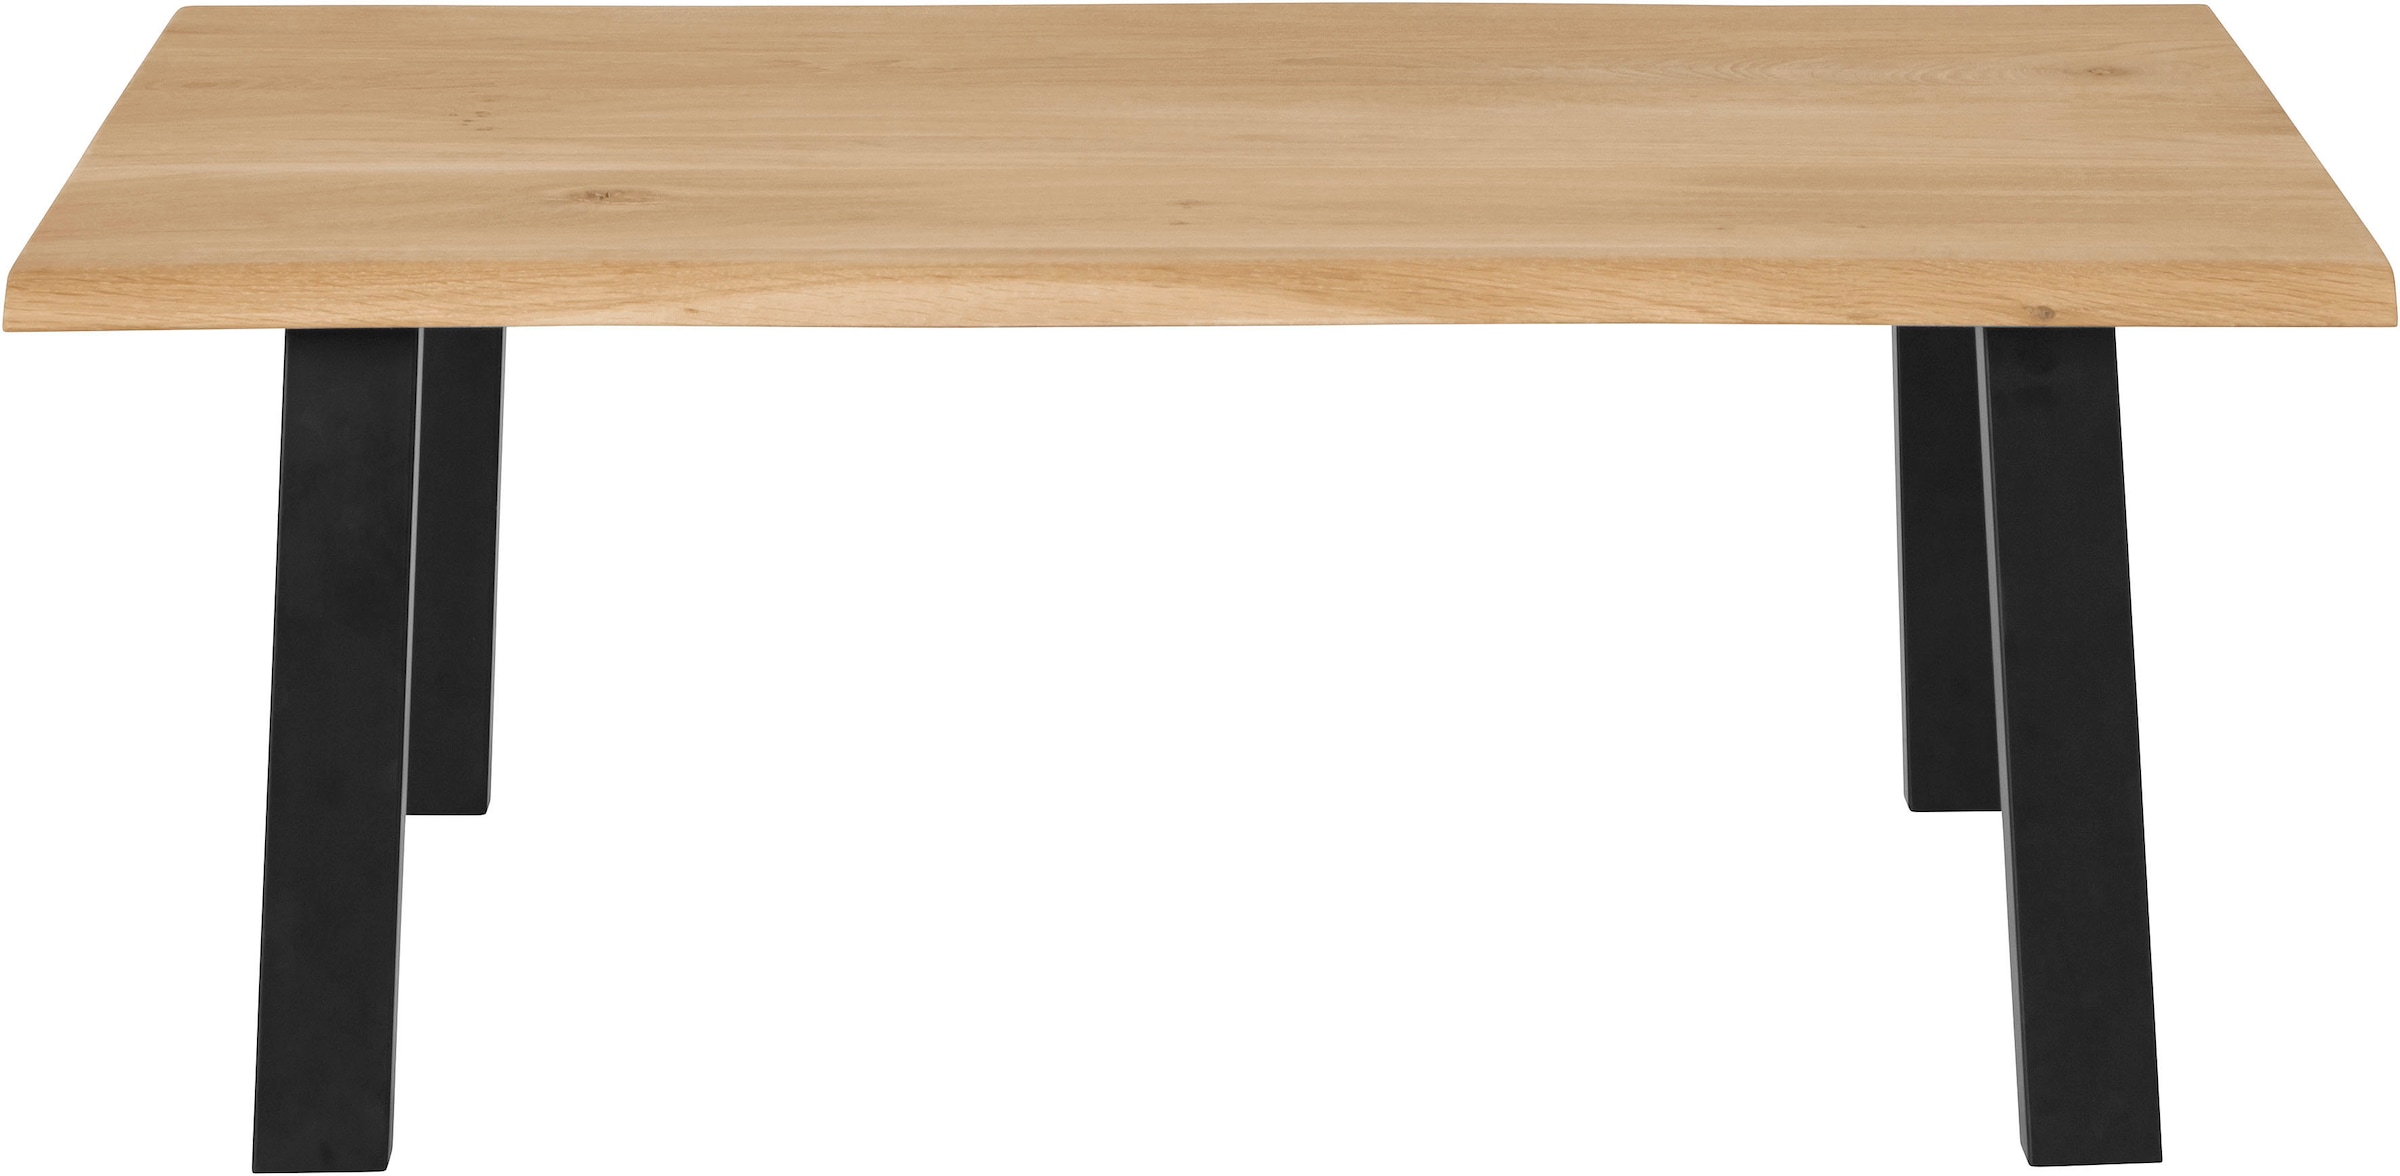 GOODproduct Couchtisch »Lennard«, aus geölter Wildeiche, rechteckige Tischplatte, mit Metallbeinen